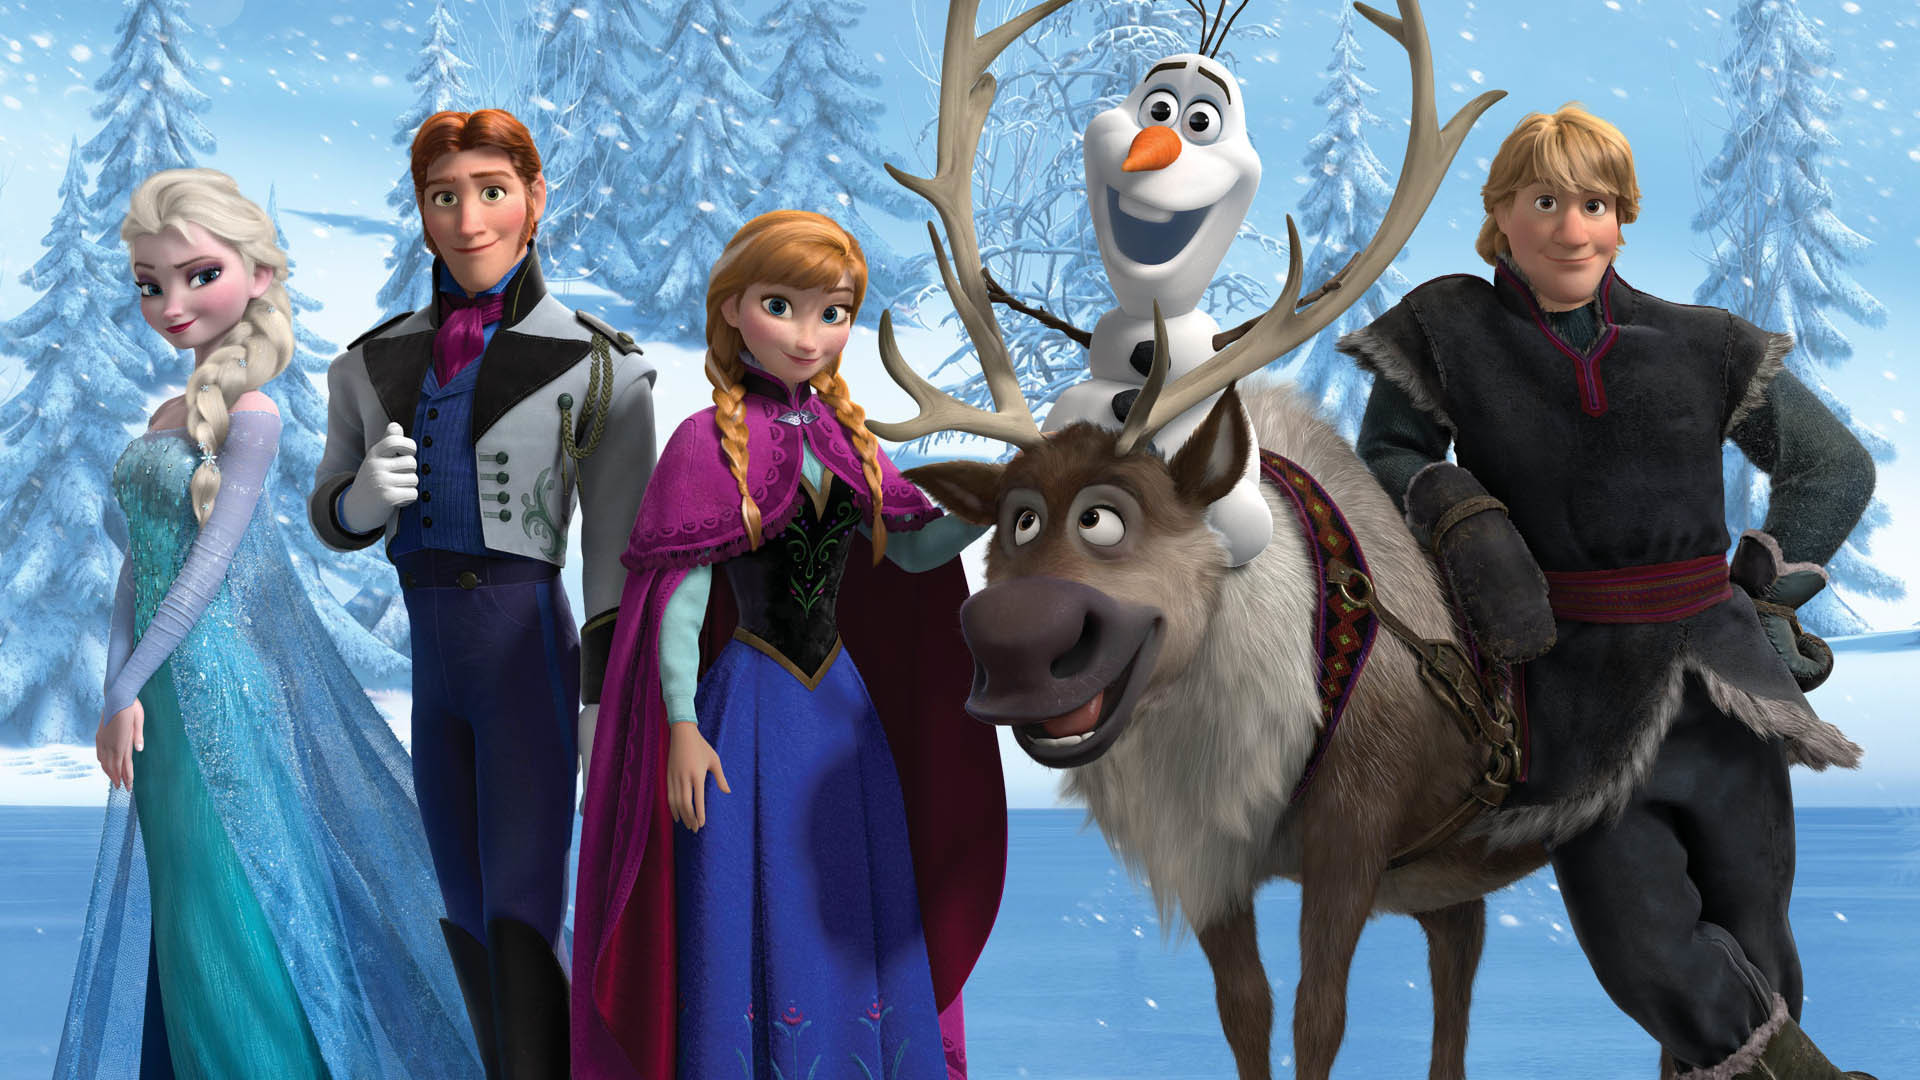 Anna Frozen Elsa Frozen Frozen Movie Hans Frozen Kristoff Frozen Olaf Frozen Sven Frozen 1920x1080